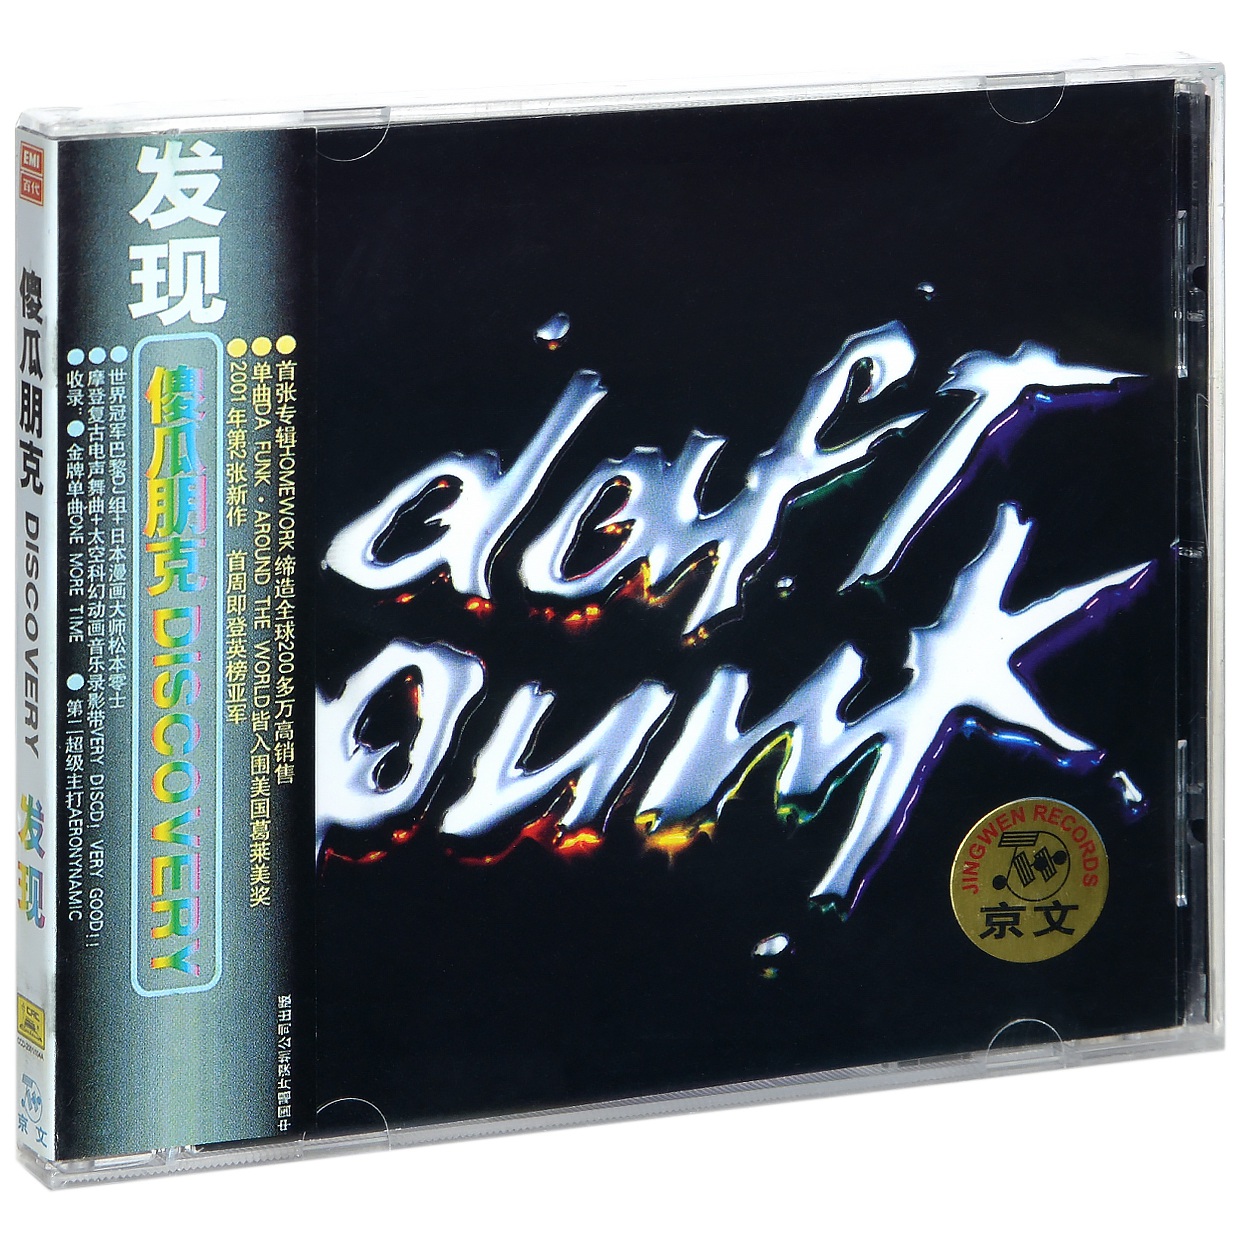 正版蠢朋克乐队专辑傻瓜朋克发现 Daft Punk Discovery CD碟片-封面